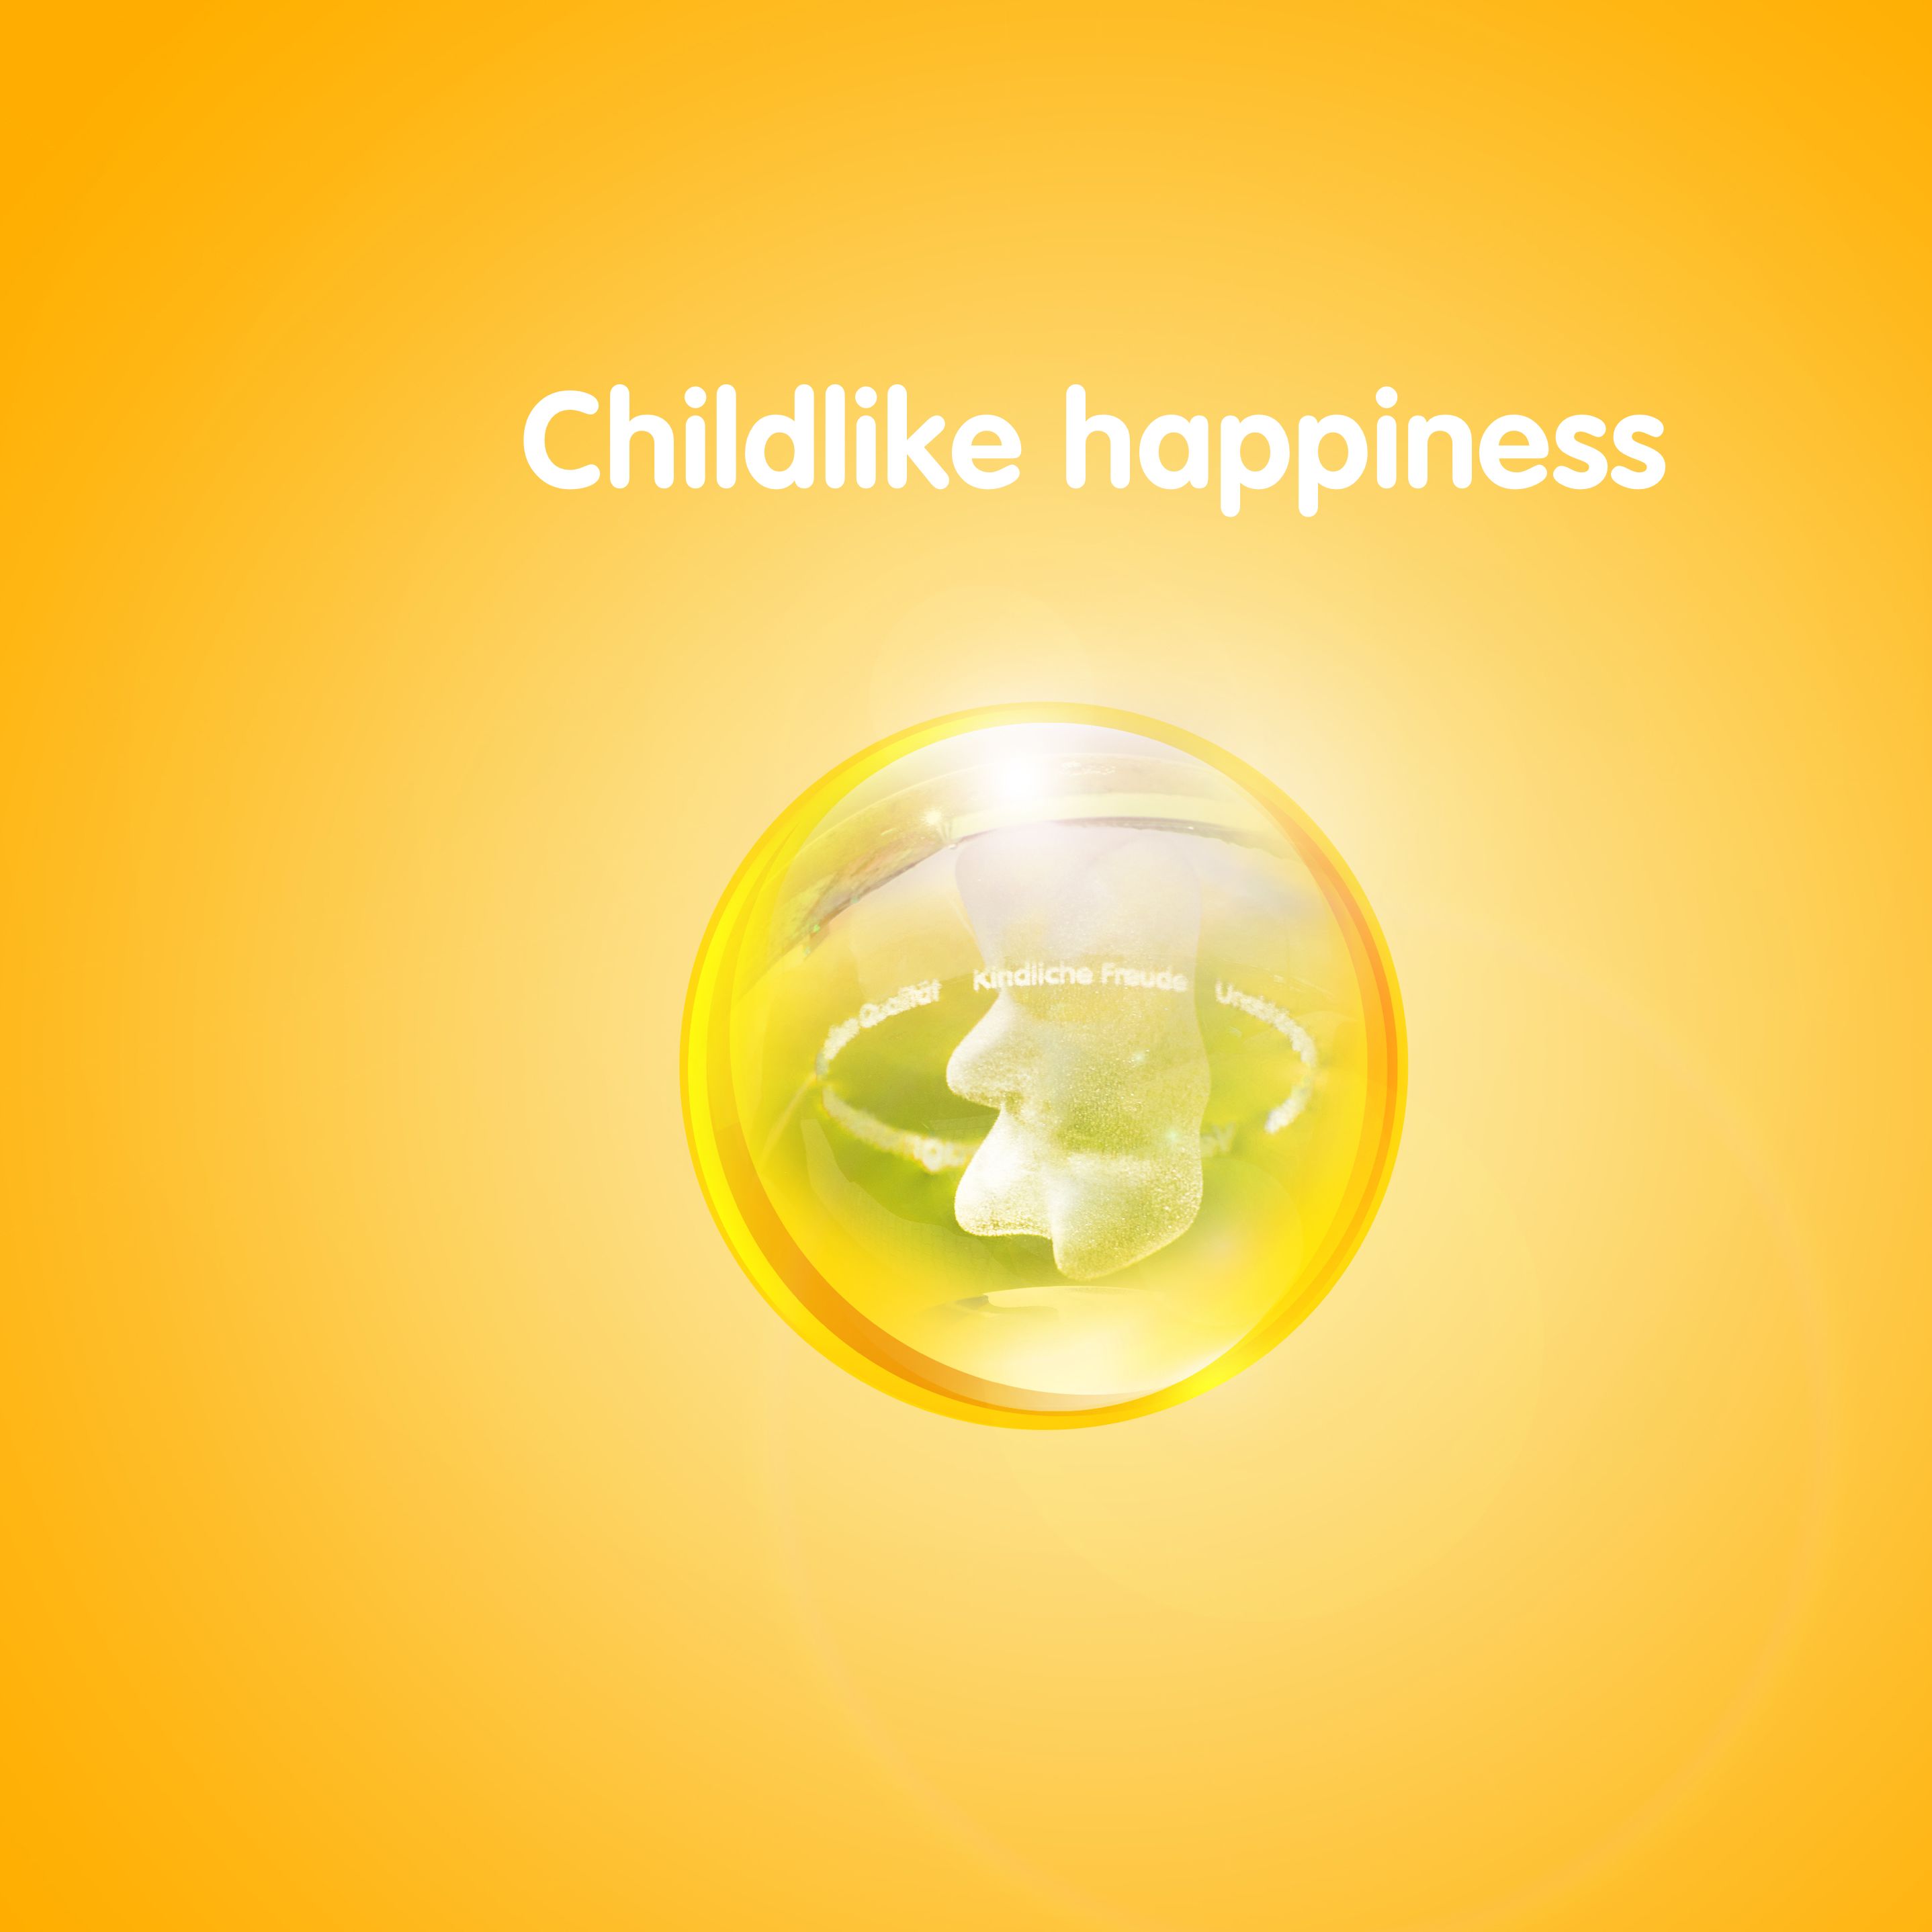 رسم محتو على دب ذهبي في كرة شفافة أمام خلفية صفراء مع النص: "السعادة الطفولية"